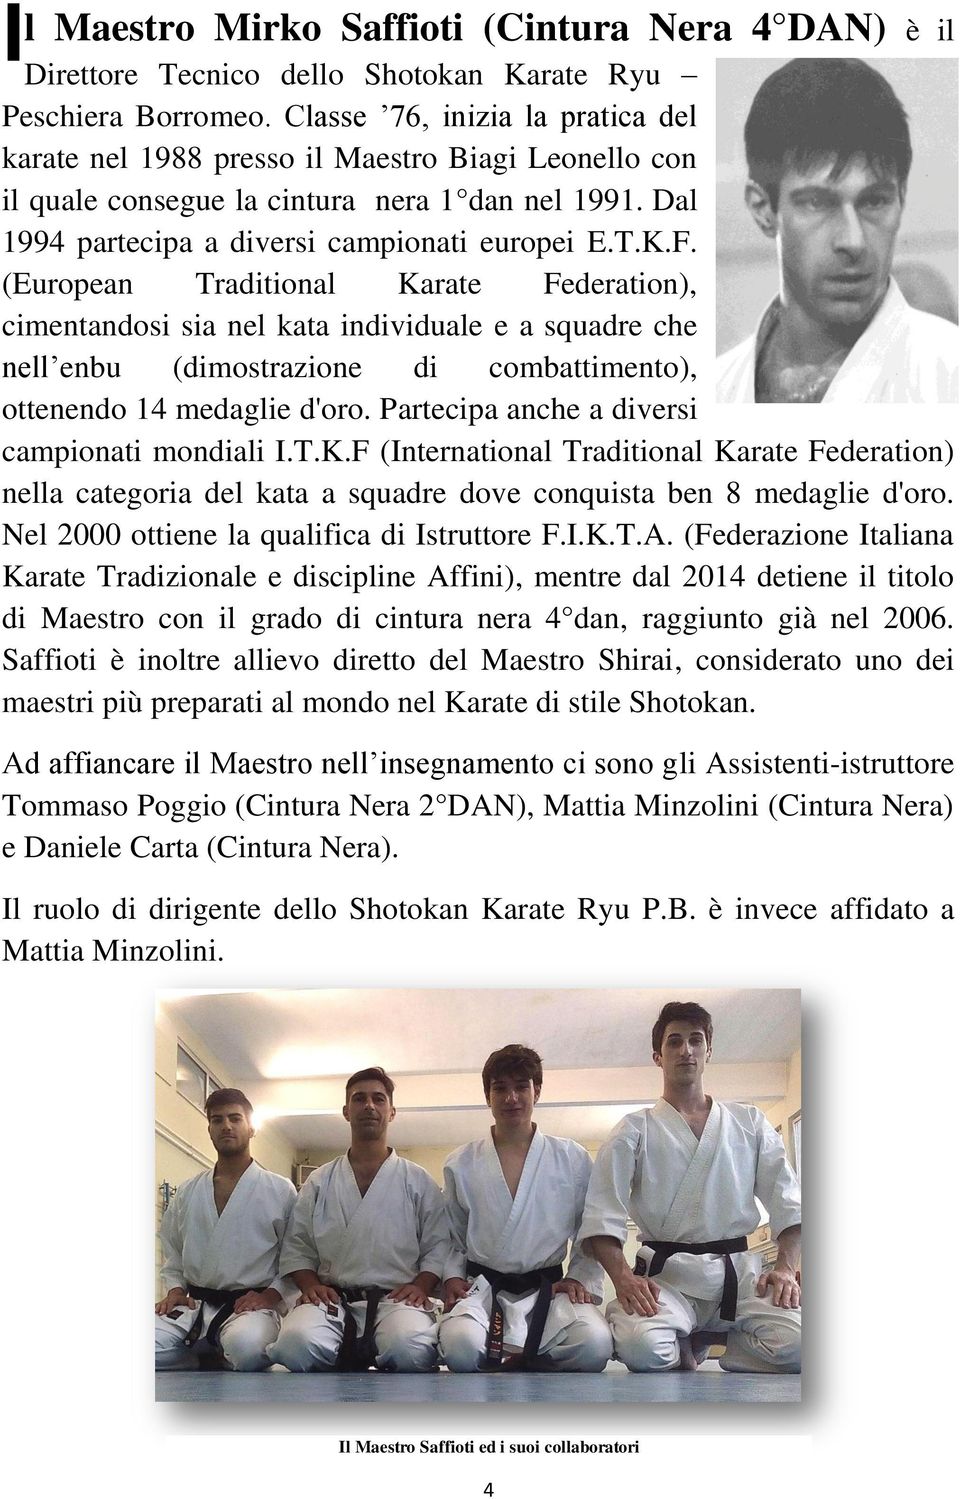 (European Traditional Karate Federation), cimentandosi sia nel kata individuale e a squadre che nell enbu (dimostrazione di combattimento), ottenendo 14 medaglie d'oro.